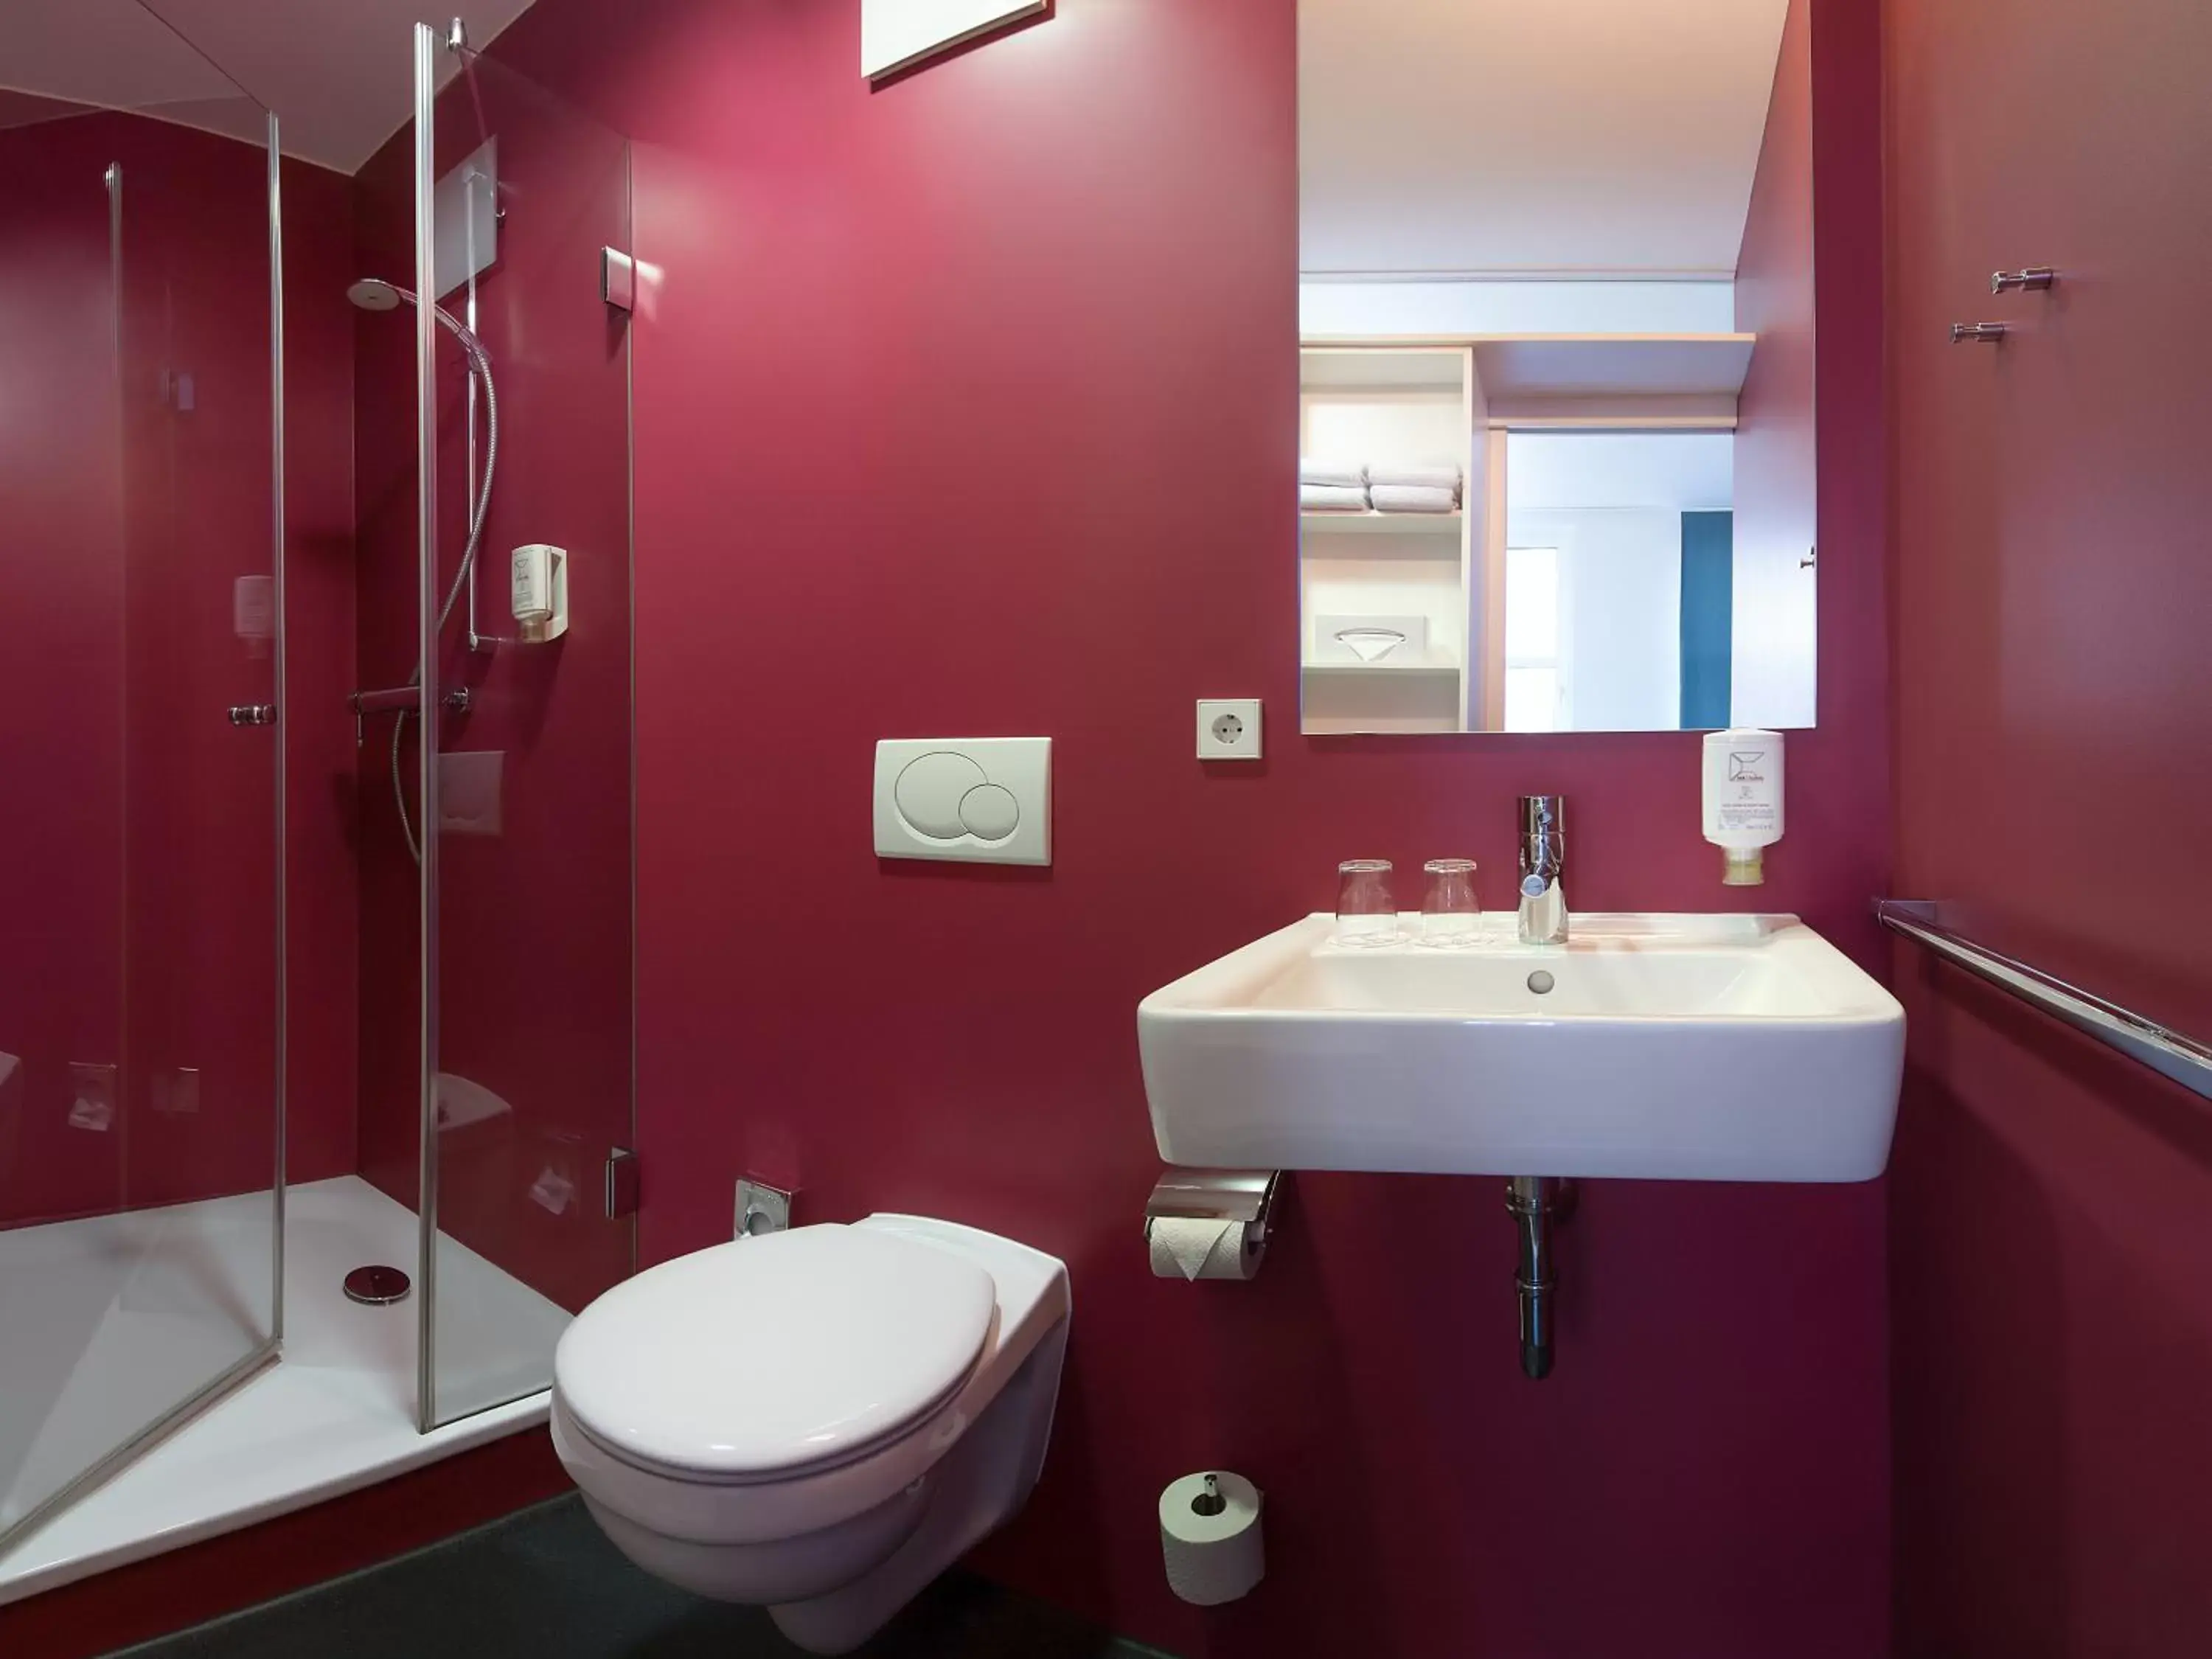 Toilet, Bathroom in mk hotel berlin